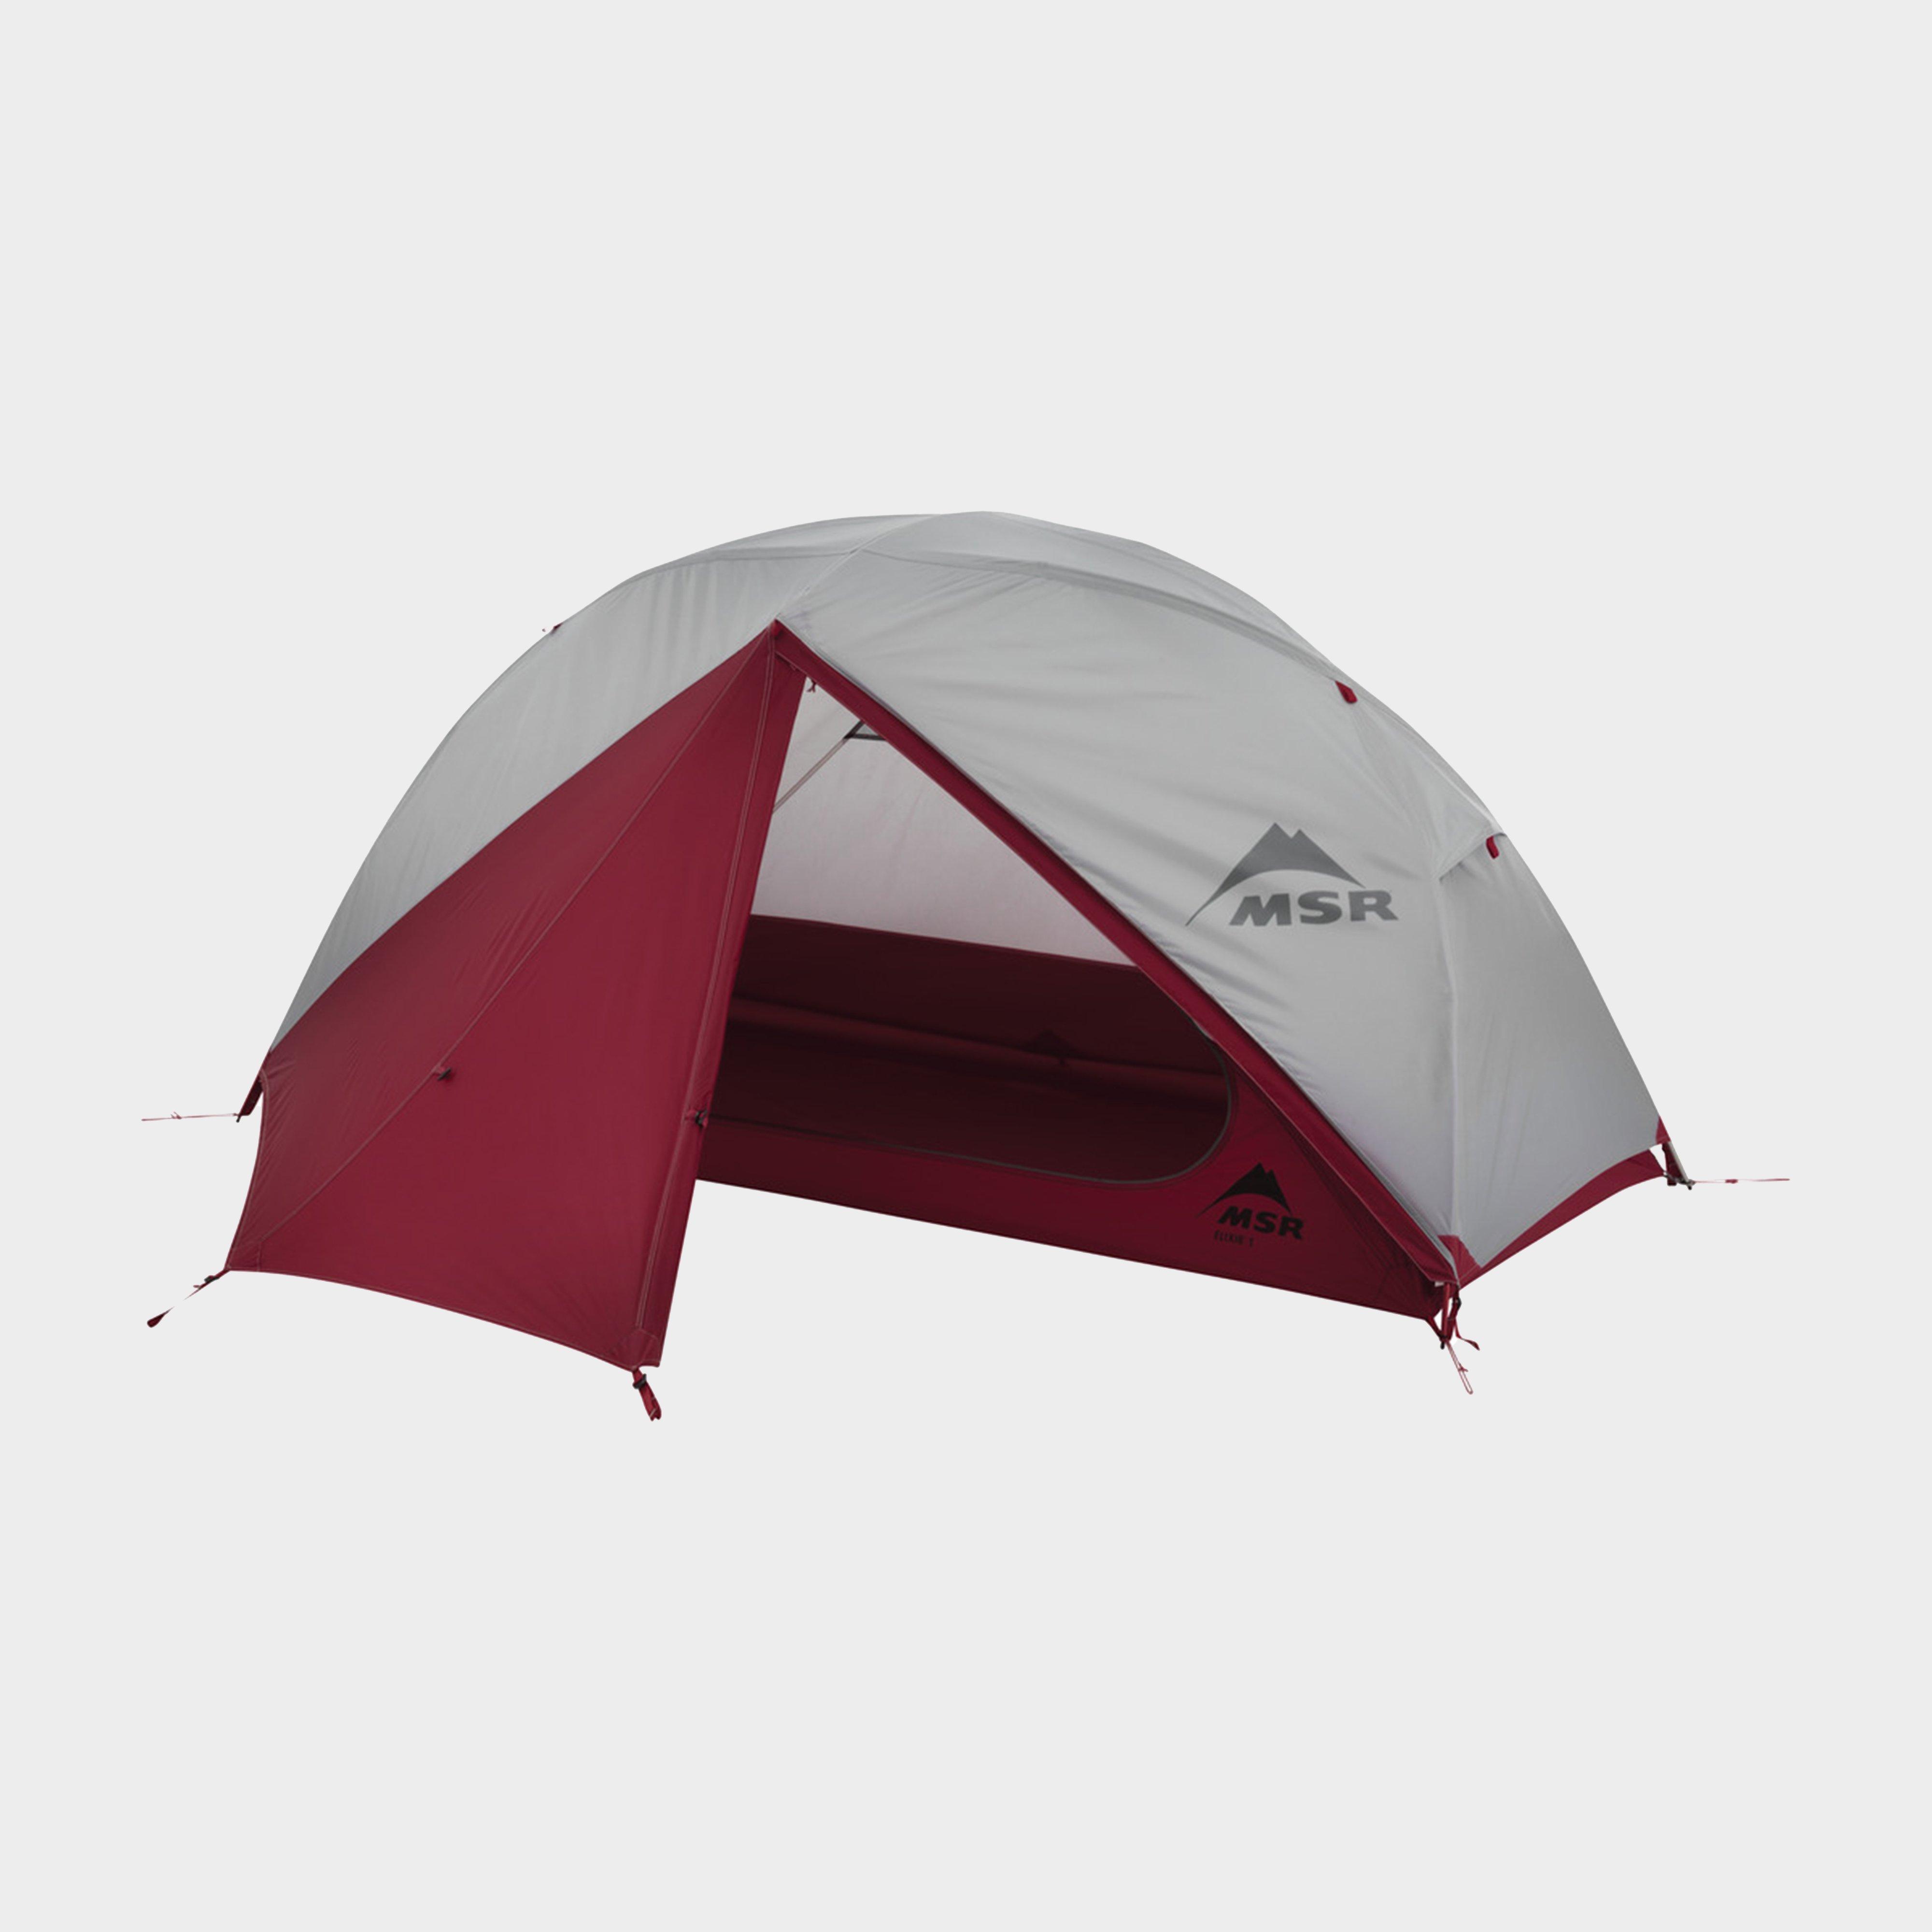 MSR Msr Elixir™ 1 Backpacking Tent - Grey, GREY